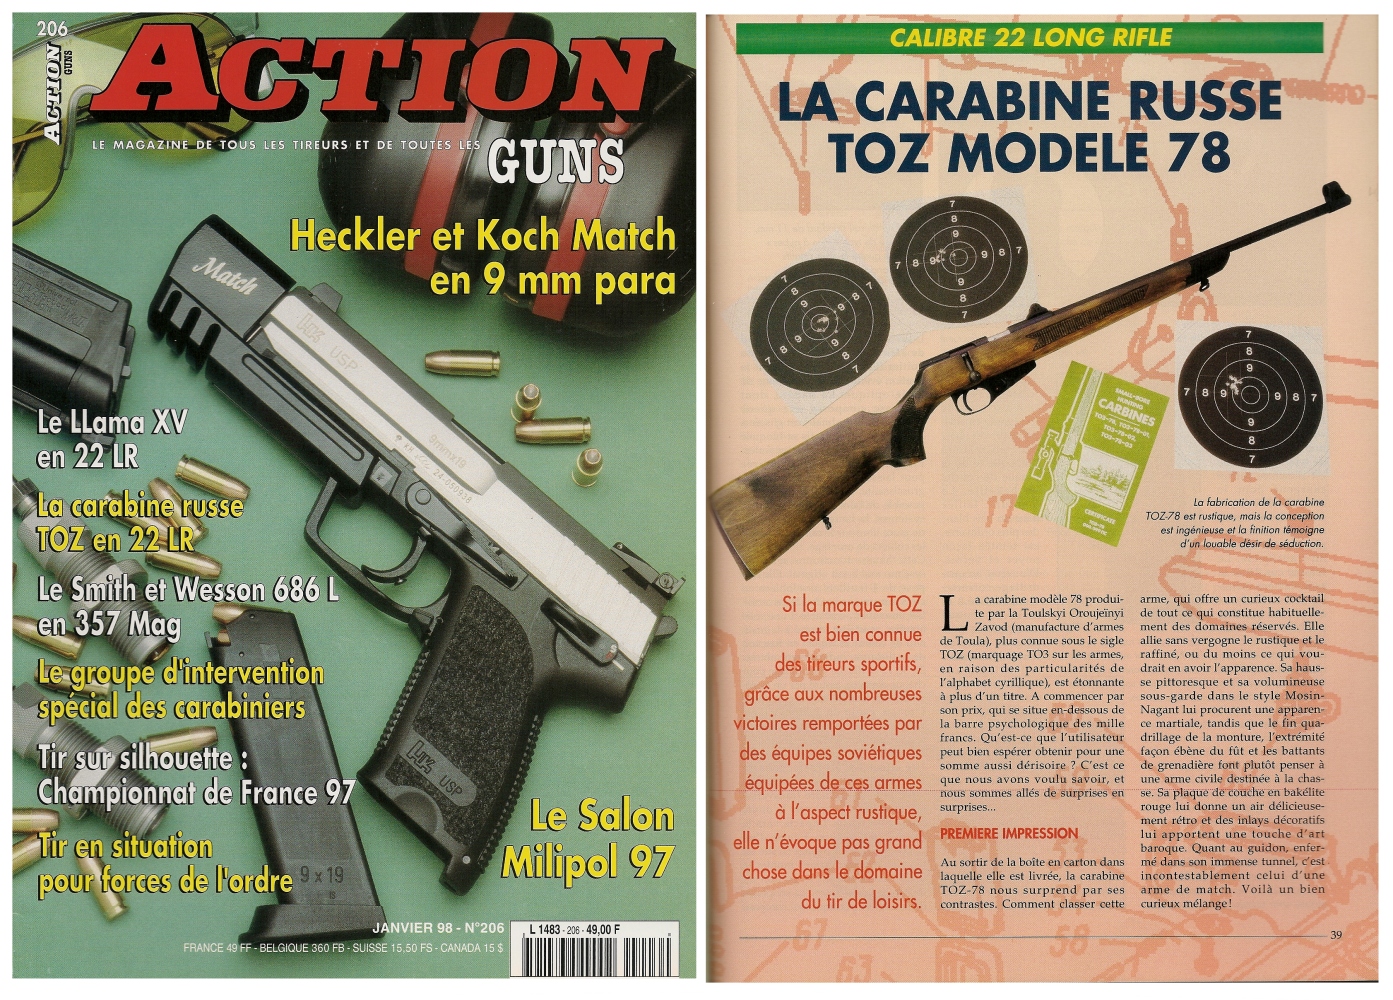 Le banc d'essai de la carabine russe TOZ 78 a été publié sur 5 pages dans le magazine Action Guns n° 206 (janvier 1998).